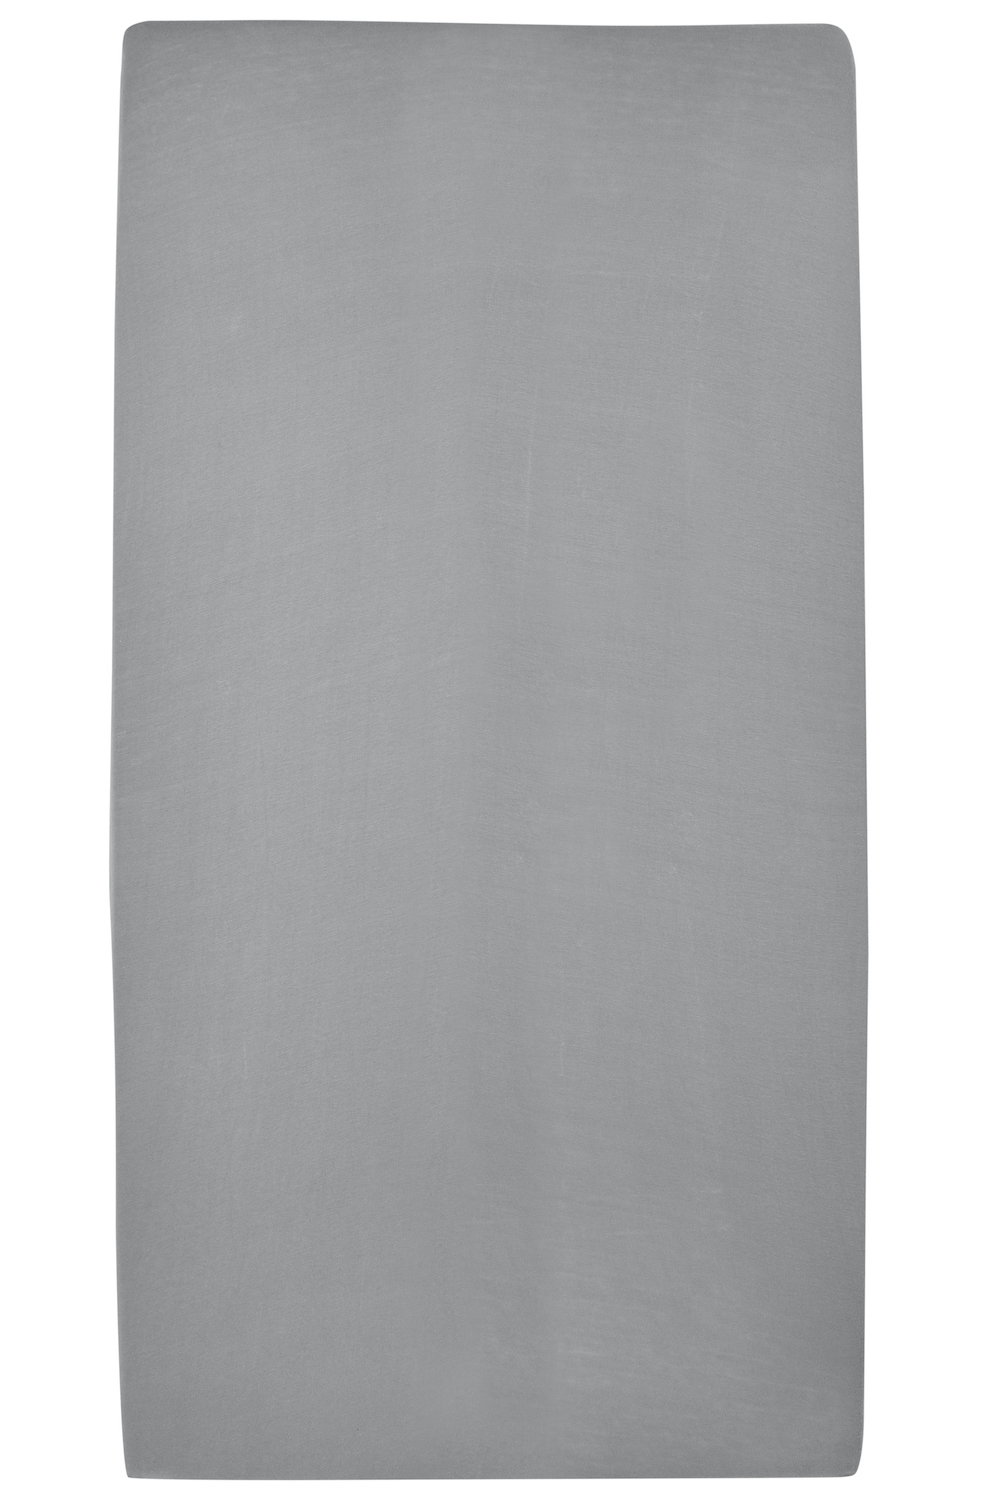 Hoeslaken tweepersoons Uni - grey - 140x200cm